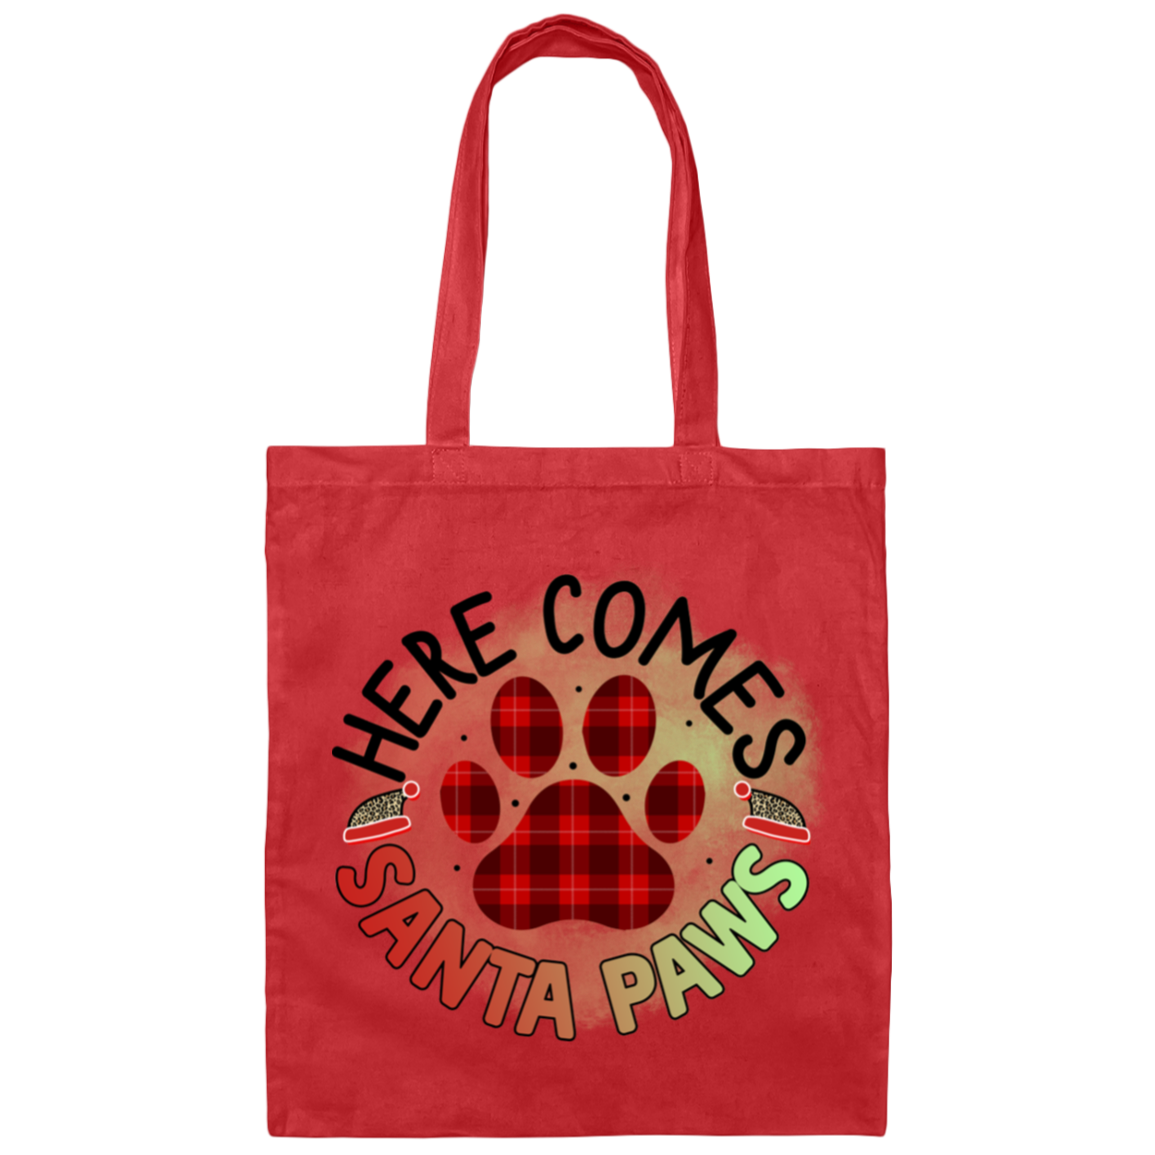 Here Comes Santa Paws Christmas Dog Canvas Tote Bag